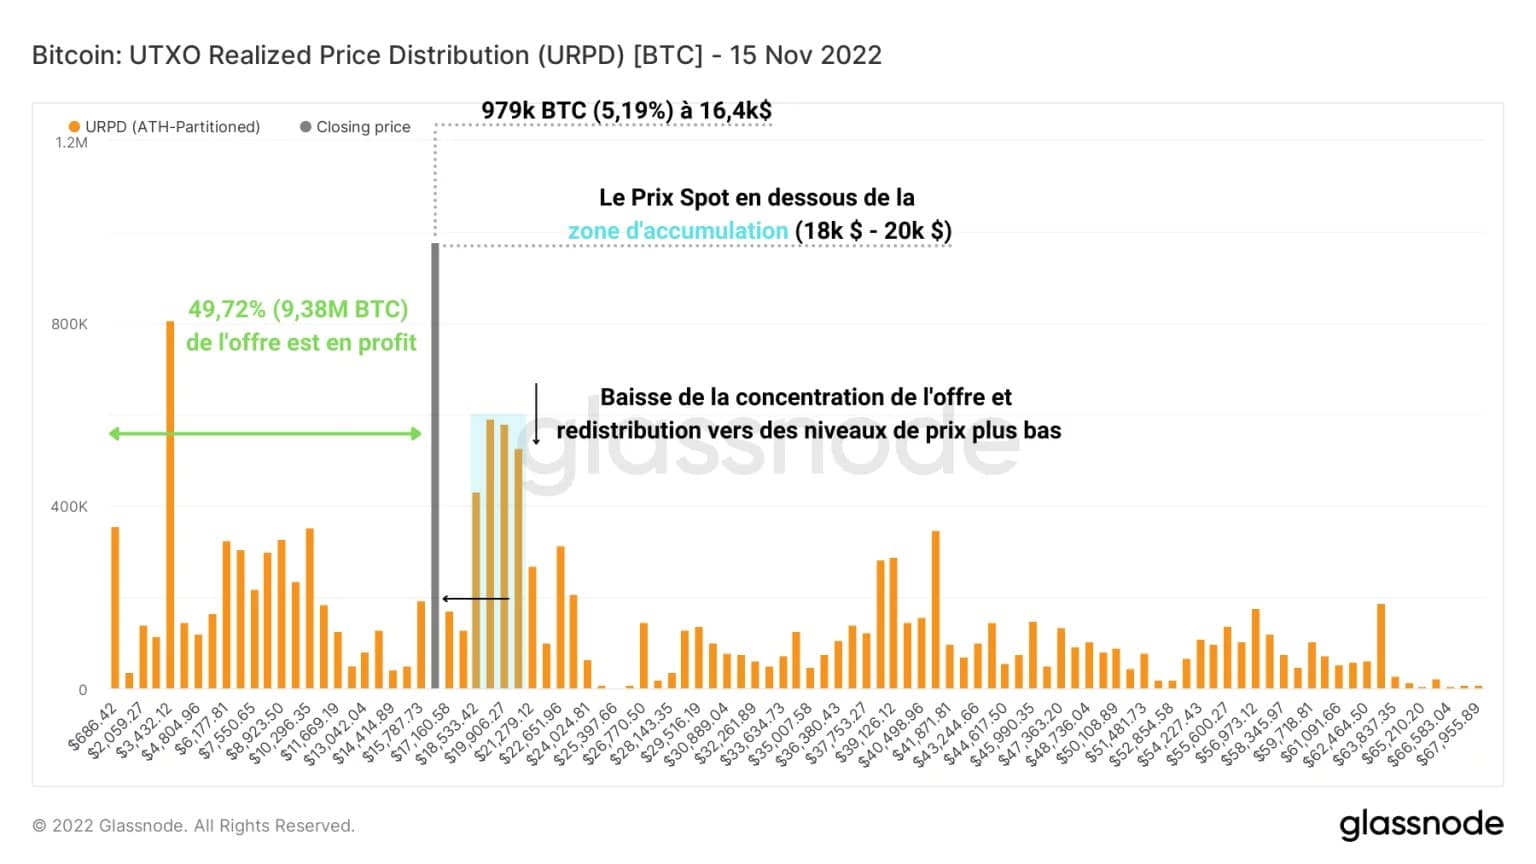 Рисунок 3: Распределение цены реализации UTXO (15 ноября 2022 года)